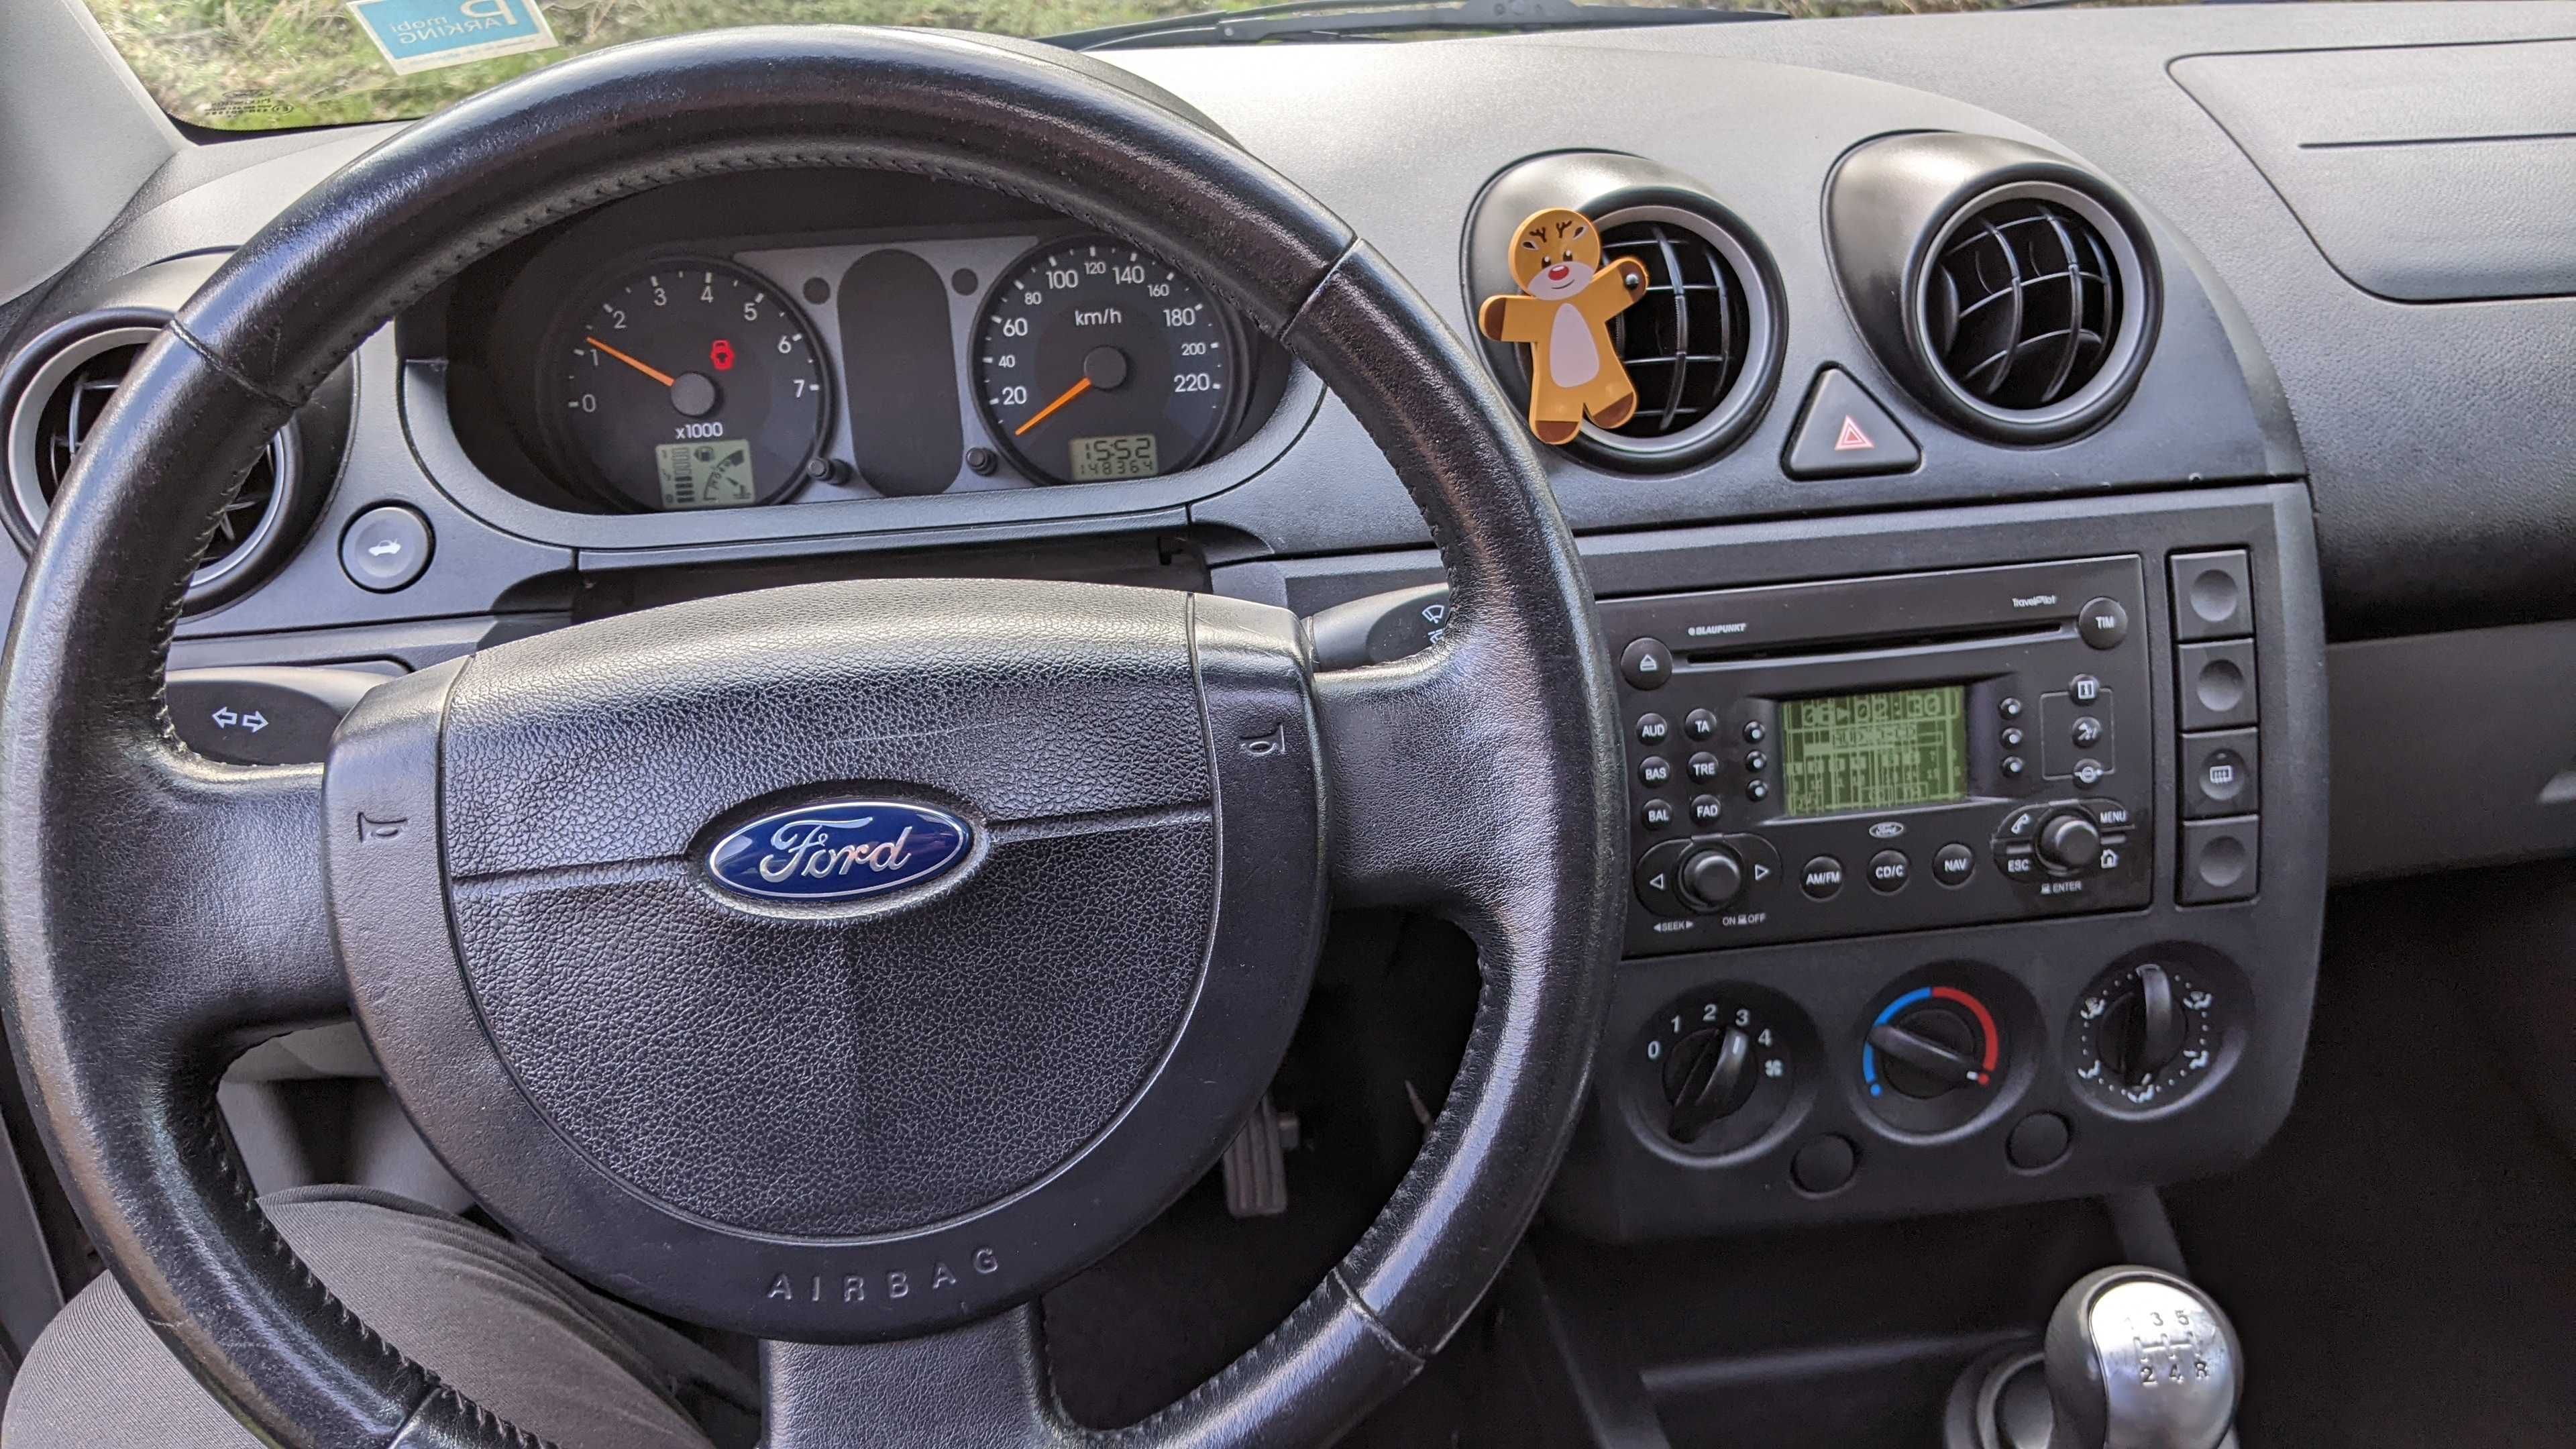 Ford Fiesta 1,3, 2002r.